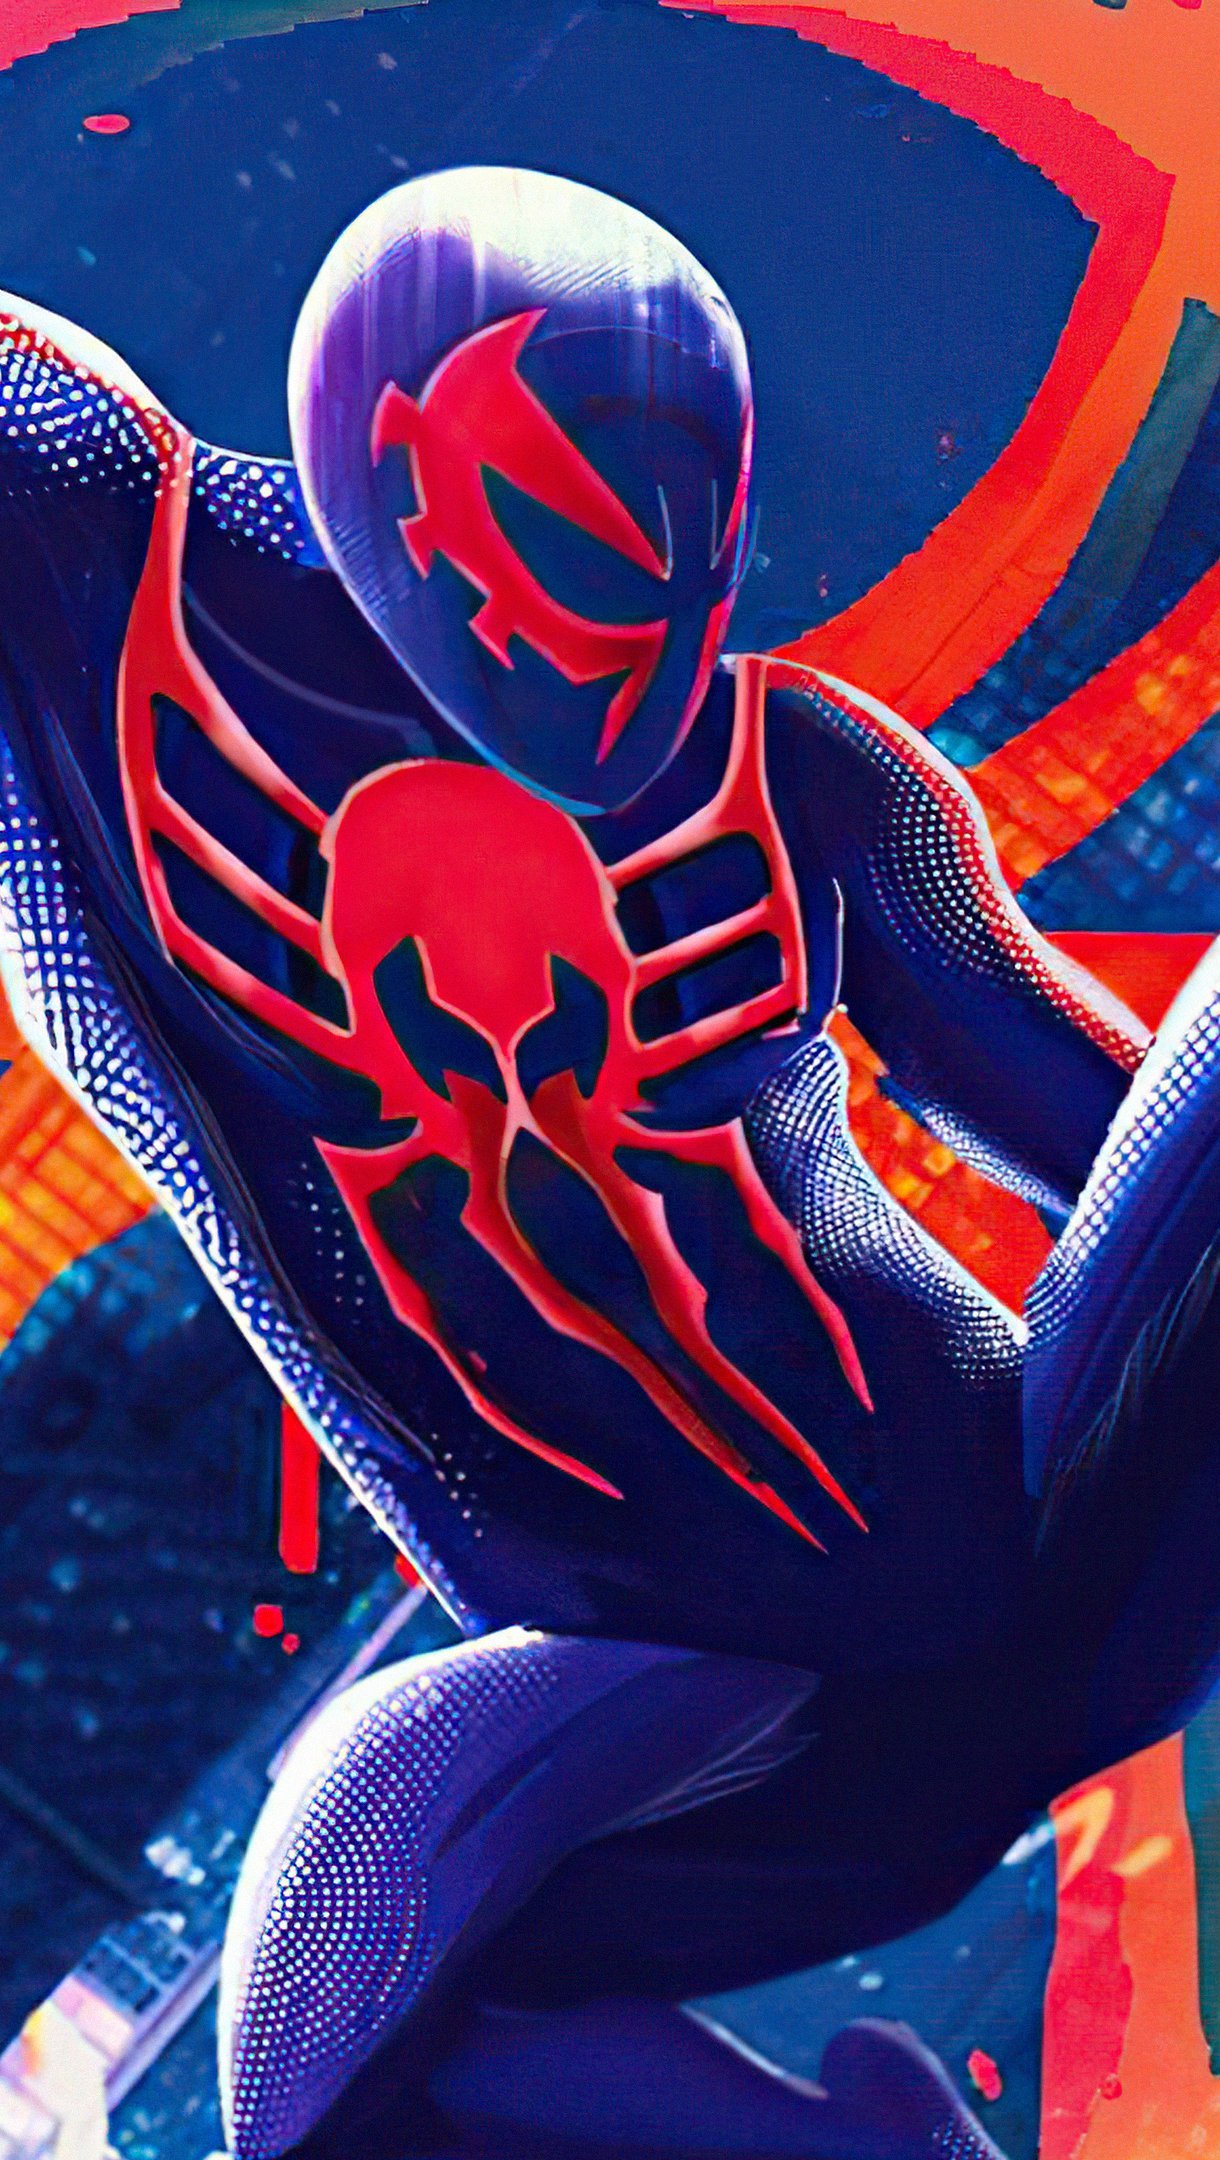 Spiderman 2099 in Multiverse Wallpaper 4k Ultra HD ID:7435